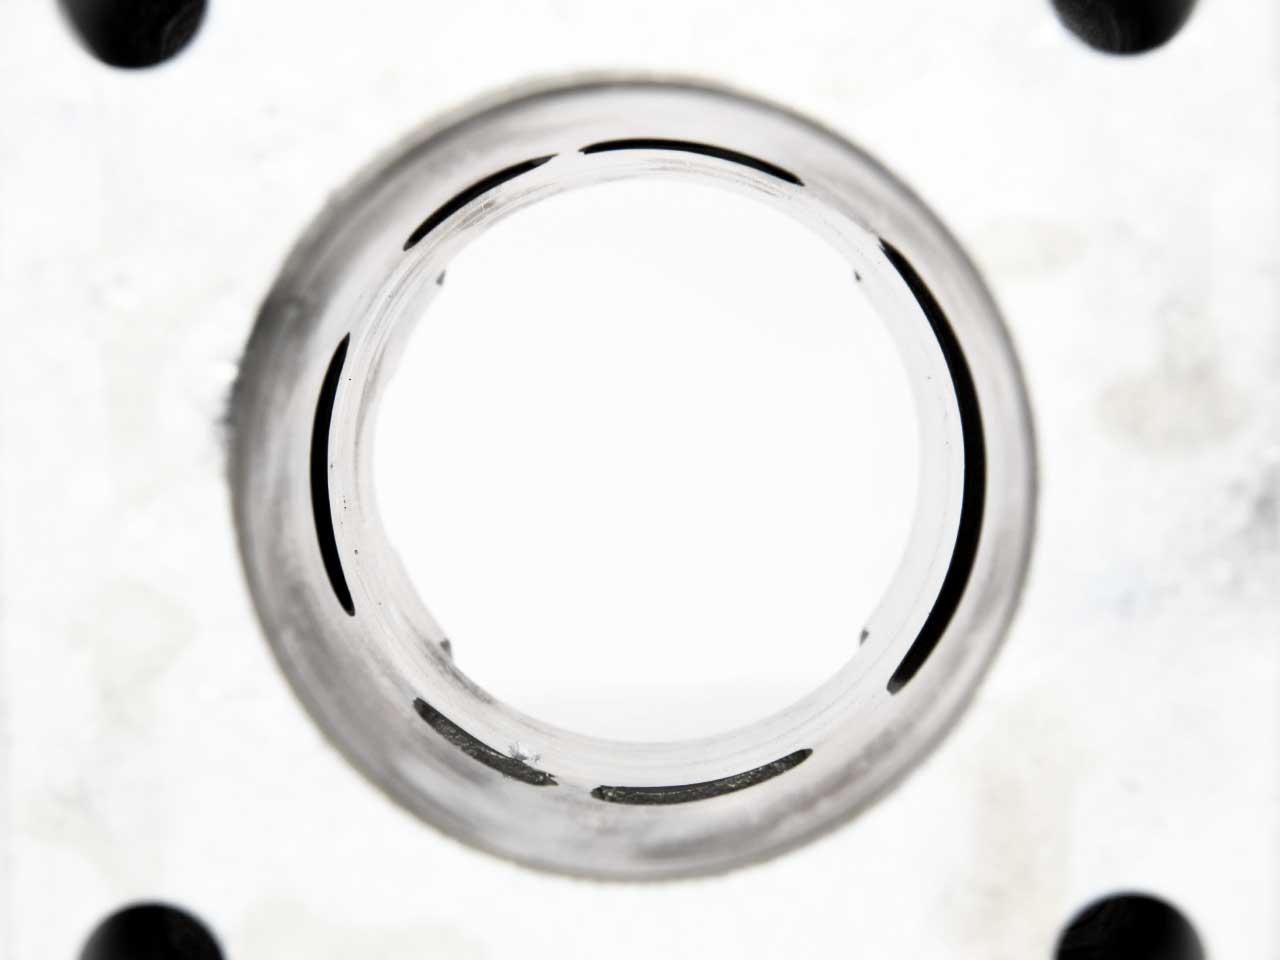 BARIKIT Tuning Zylinder von innen Fotografiert überströmter sowie Auslass sichtbar.